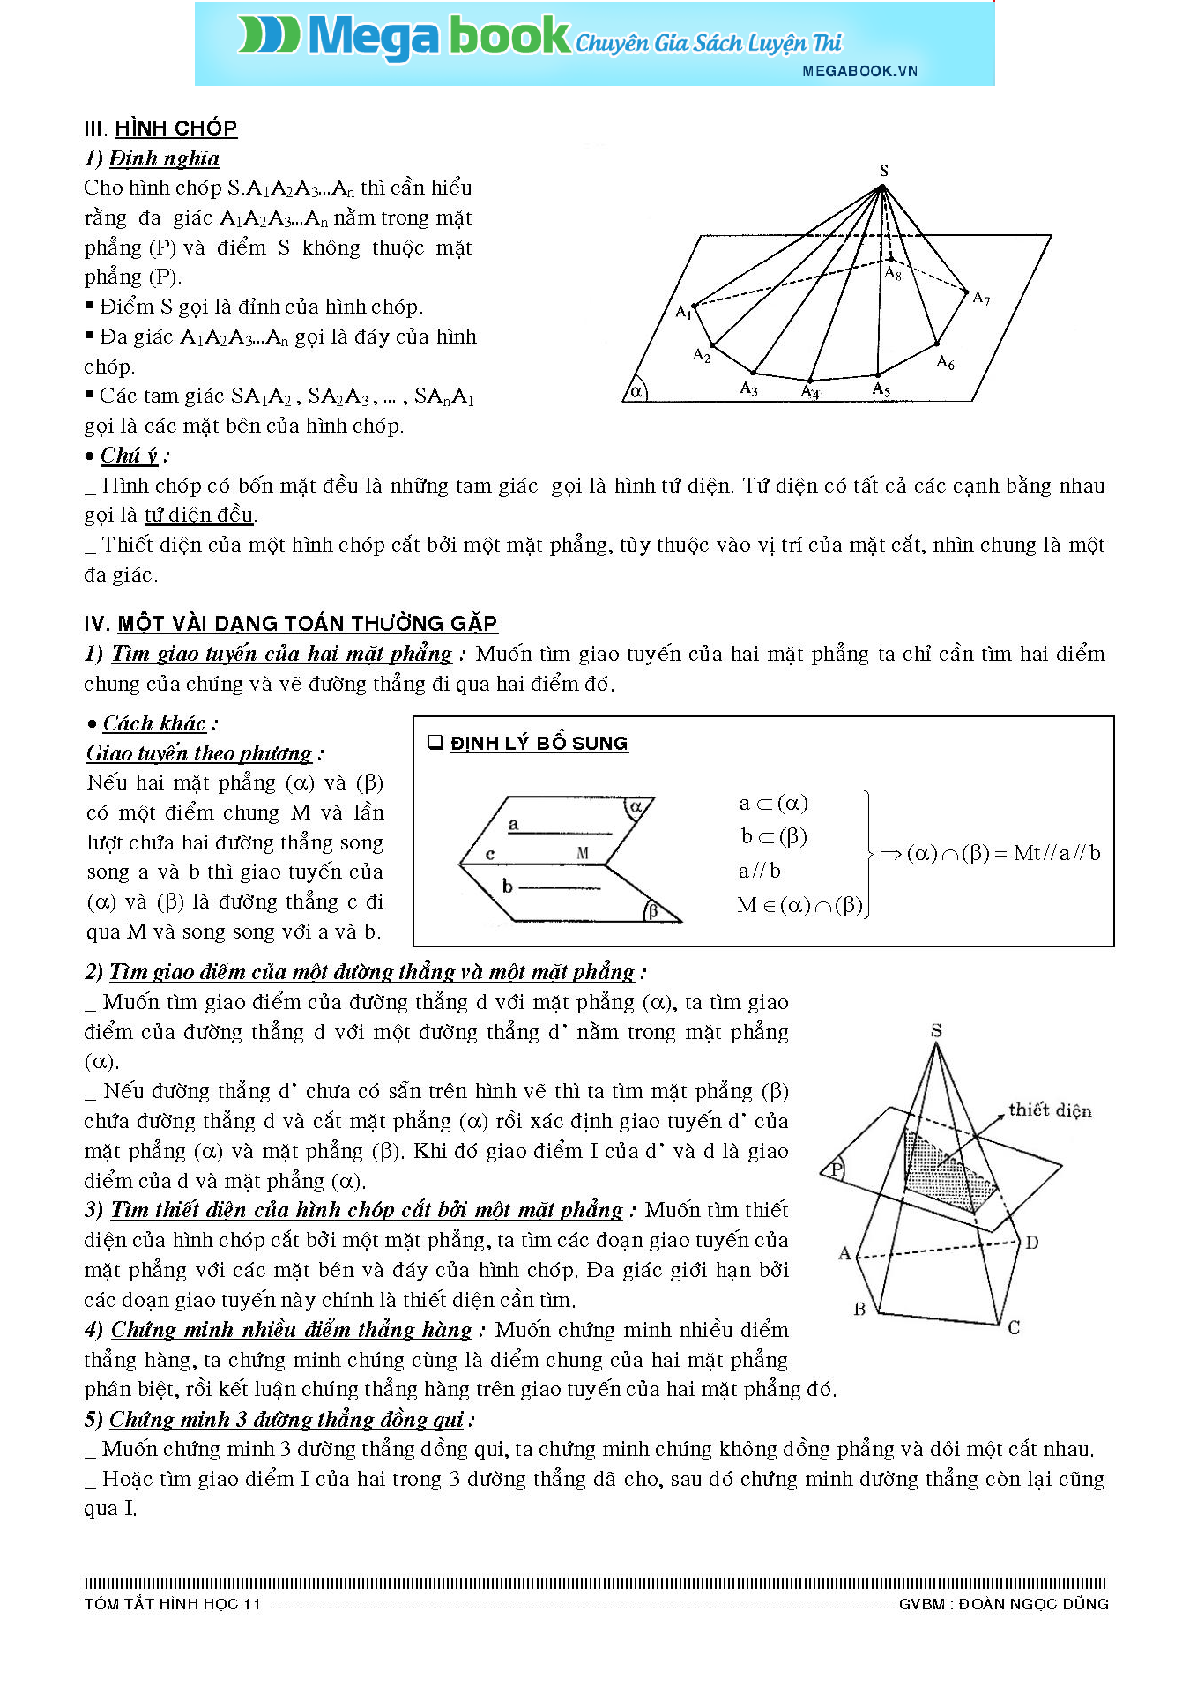 Lý thuyết hình học môn Toán lớp 11 đầy đủ nhất (trang 5)